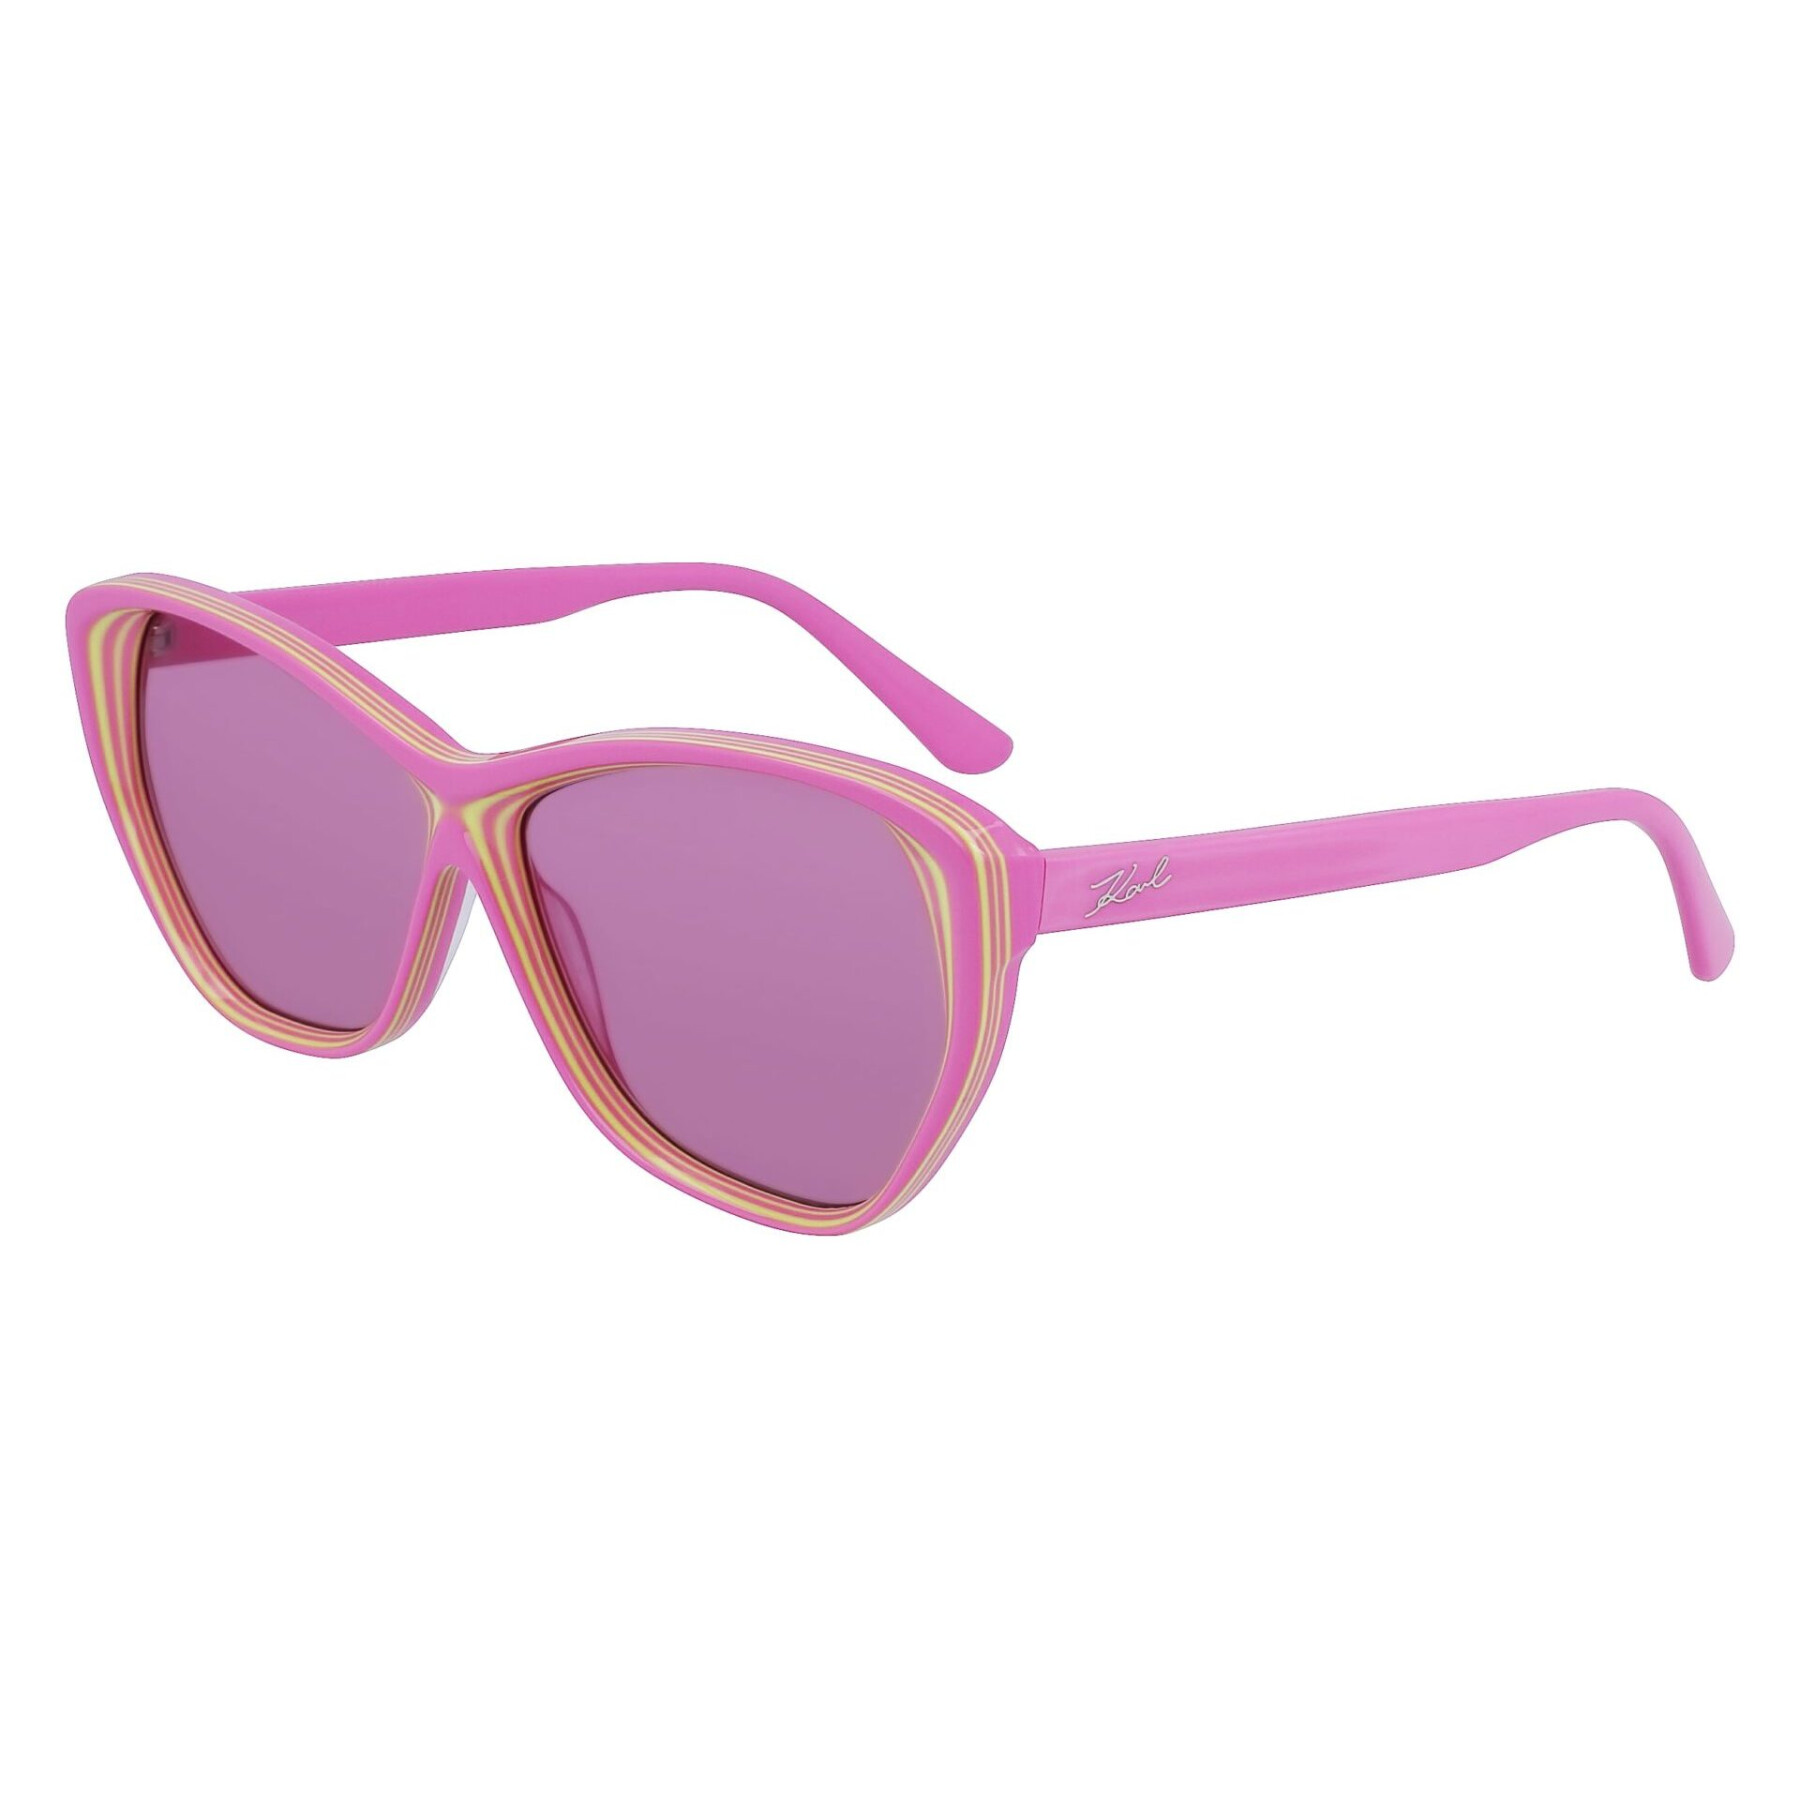 Women's sunglasses Karl Lagerfeld KL6103S-664